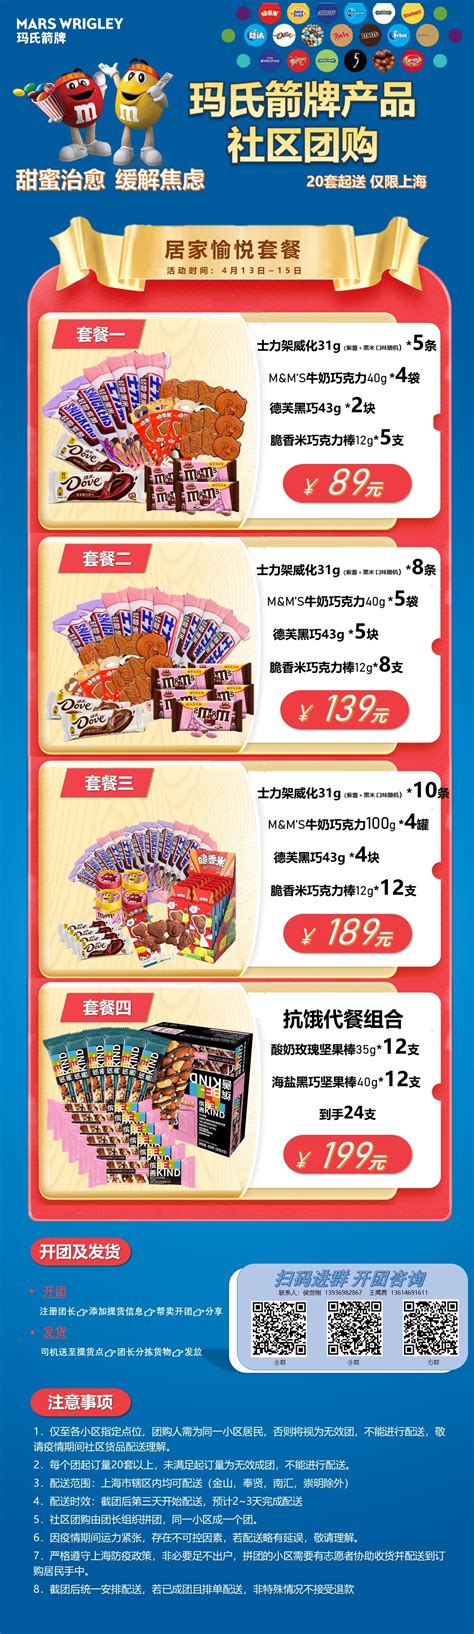 玛氏箭牌发布上海团购信息，参团产品包括士力架威化、德芙黑巧、脆香米巧克力棒、M&M